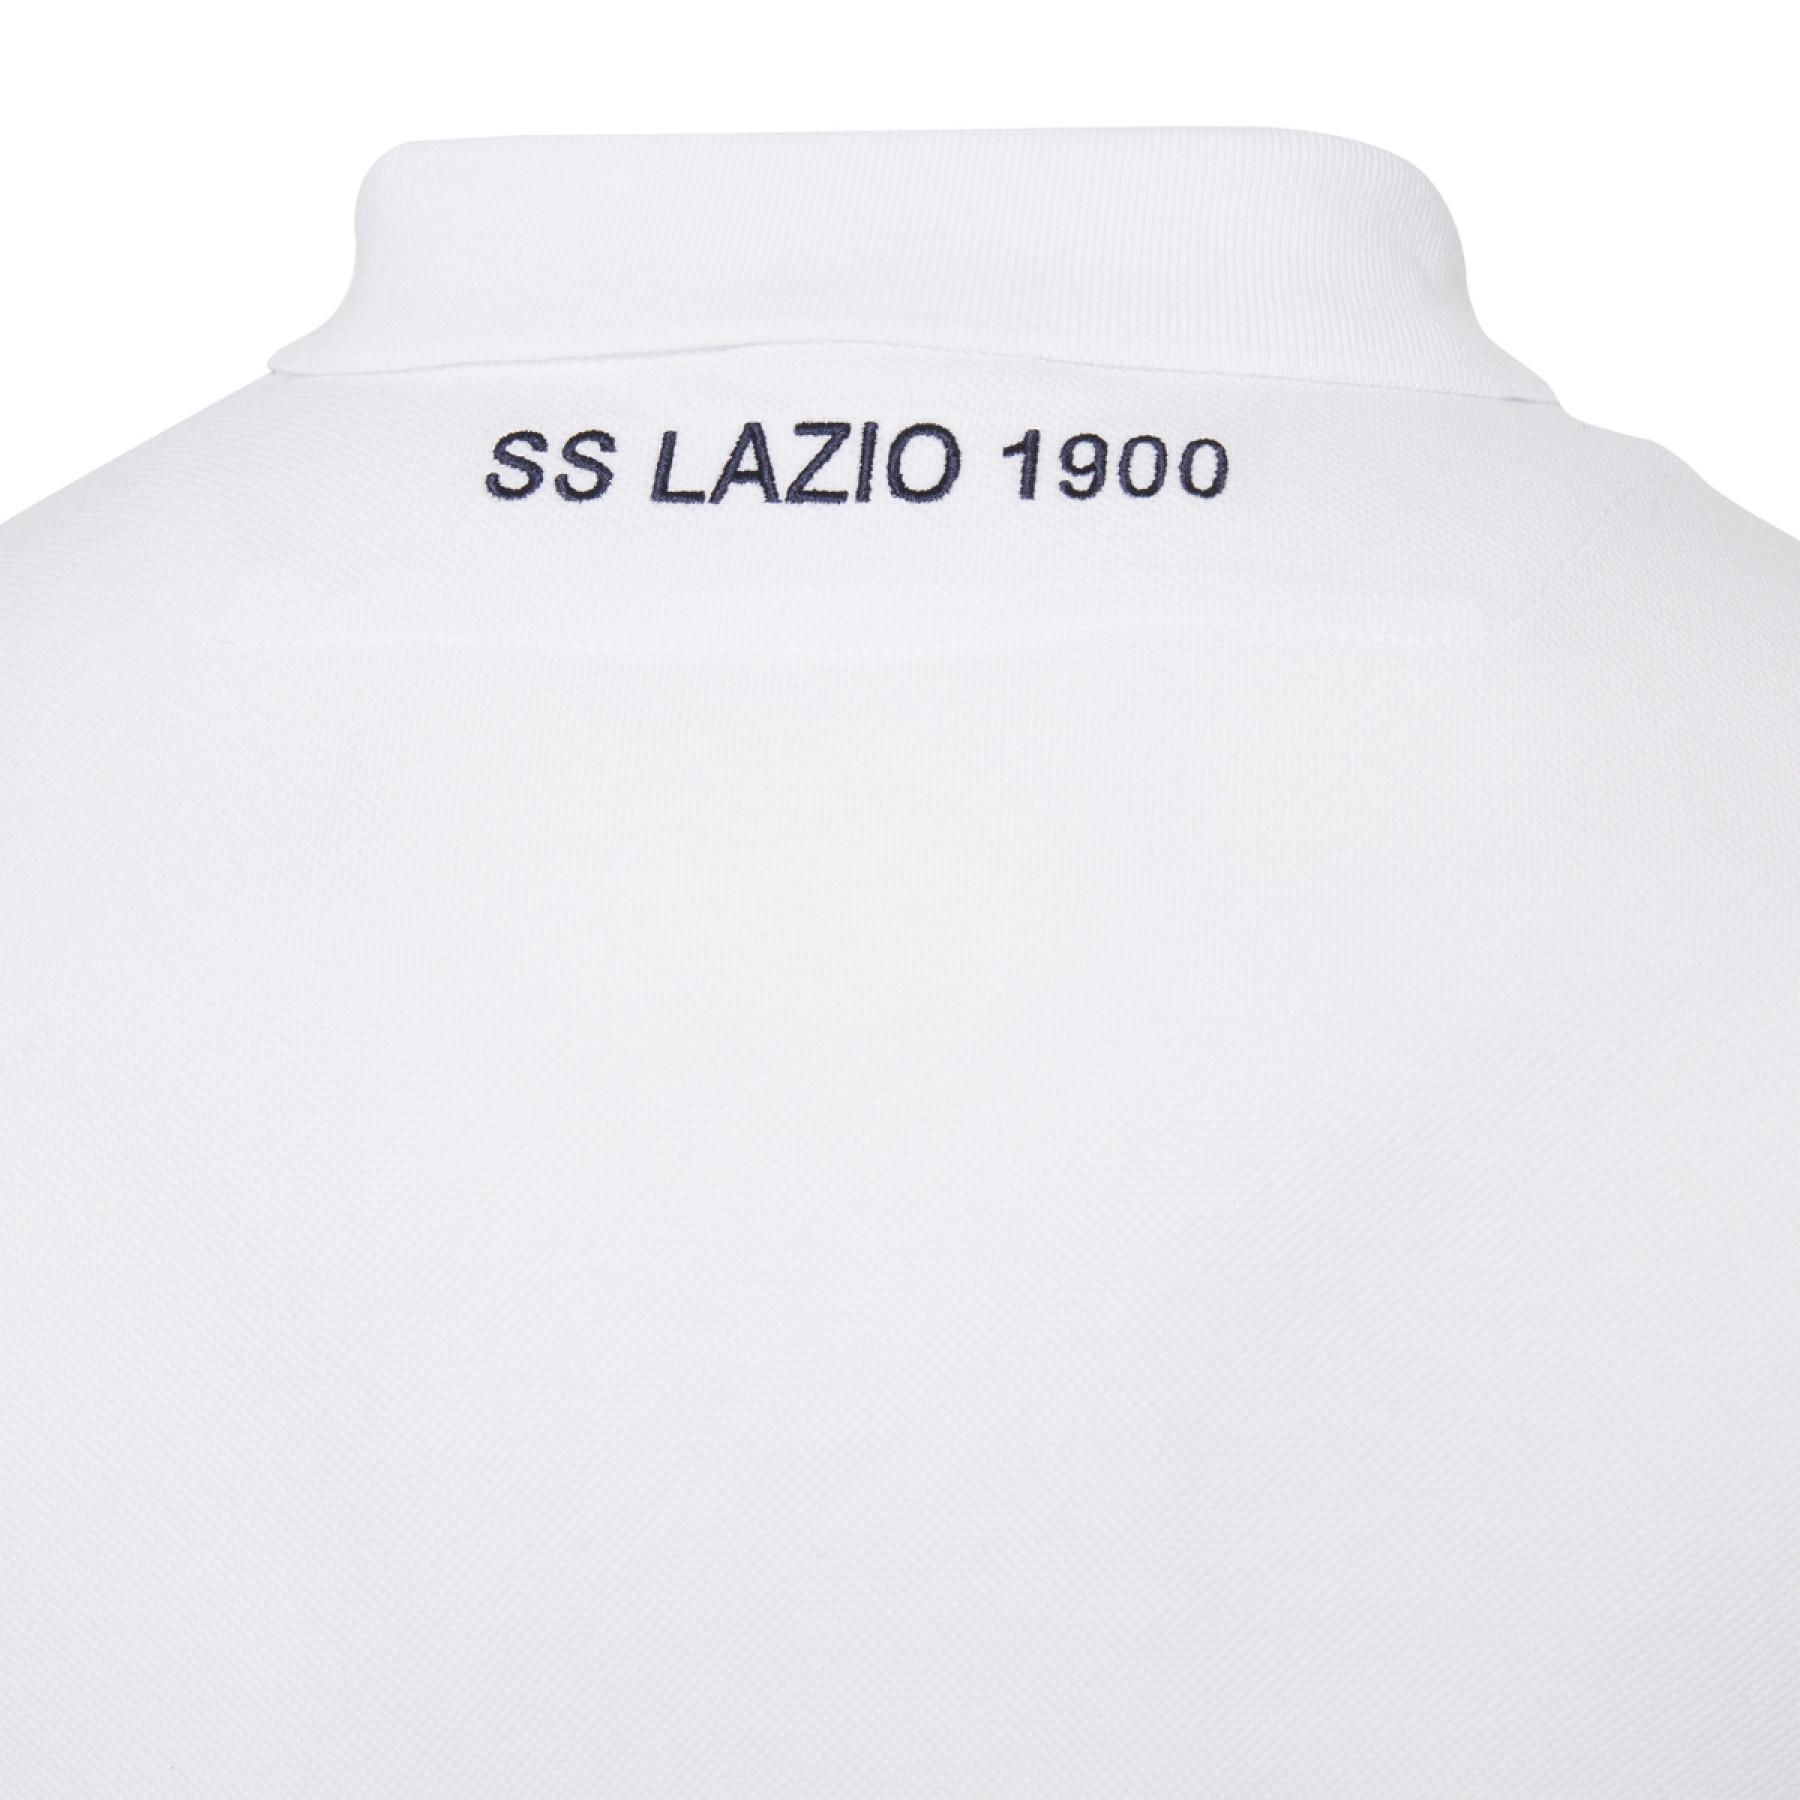 Pólo Lazio Rome coton 2020/21